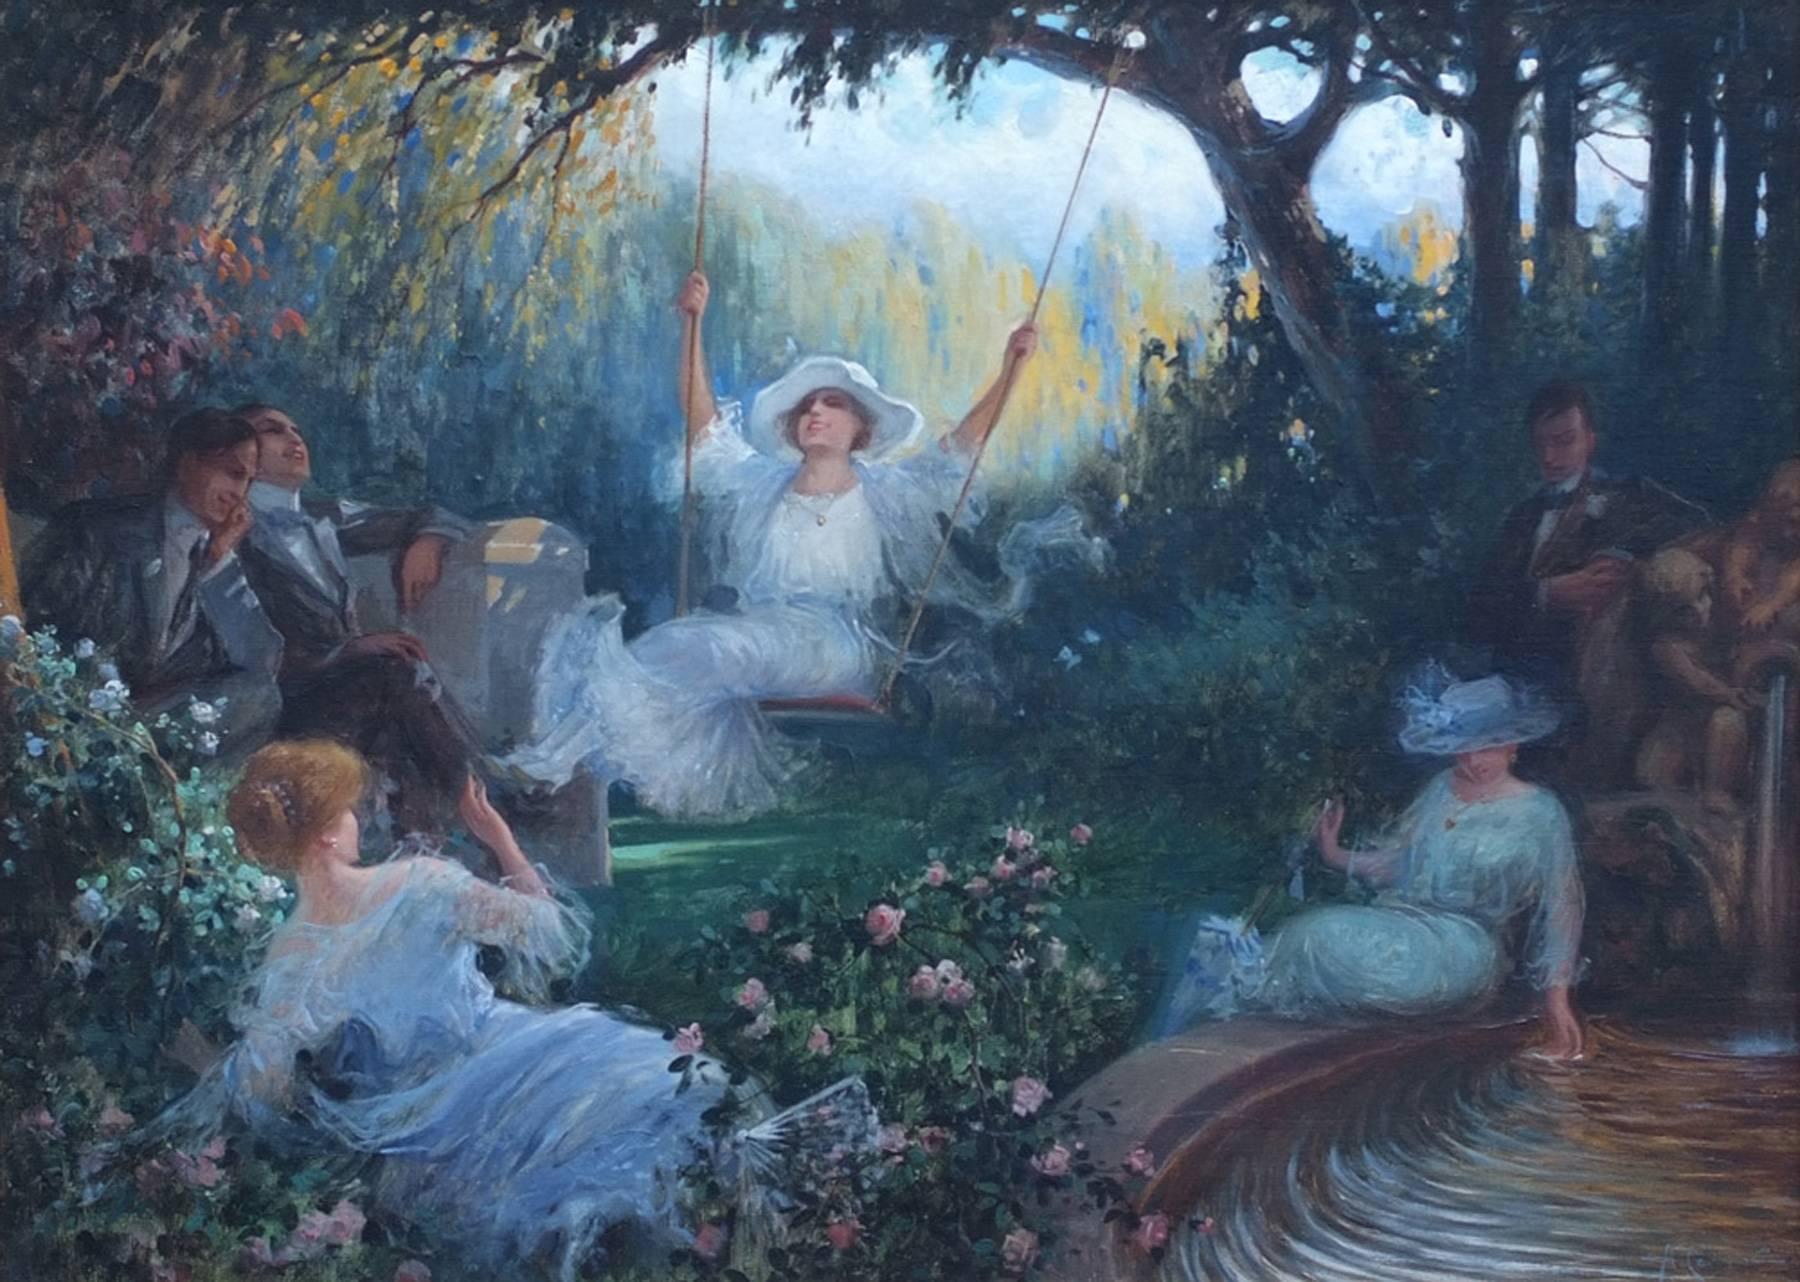 The Swing - Romantische Szene im Garten (Grau), Landscape Painting, von Antonio Cerveto